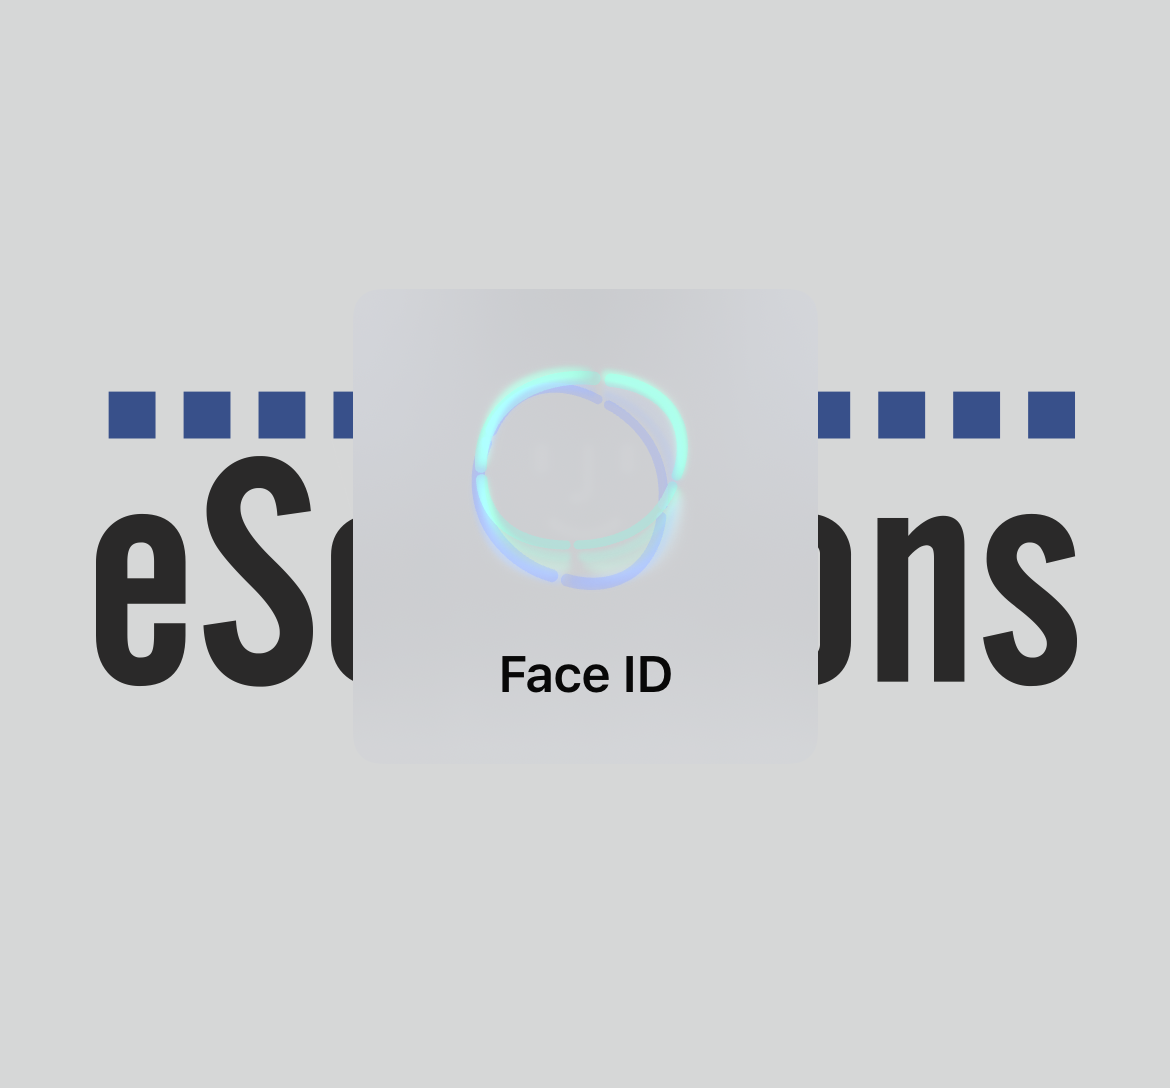 Bild der Verschlüsselung per Face ID auf dem iPhone